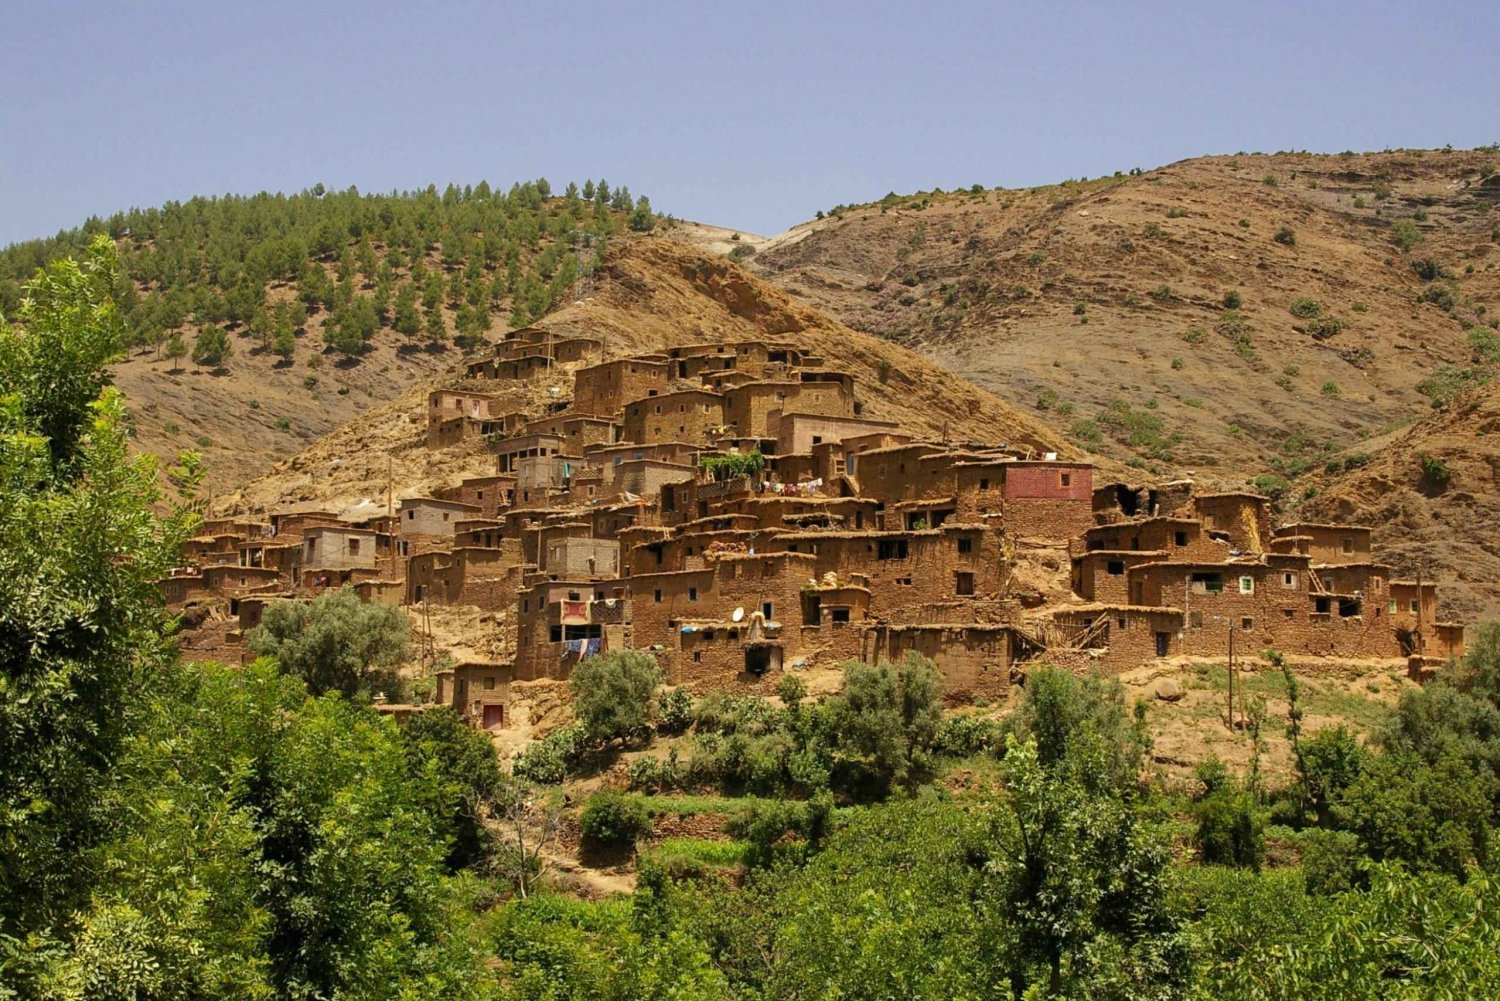 Fra Marrakech: Tur til Atlasbjergene og Ourika-dalen